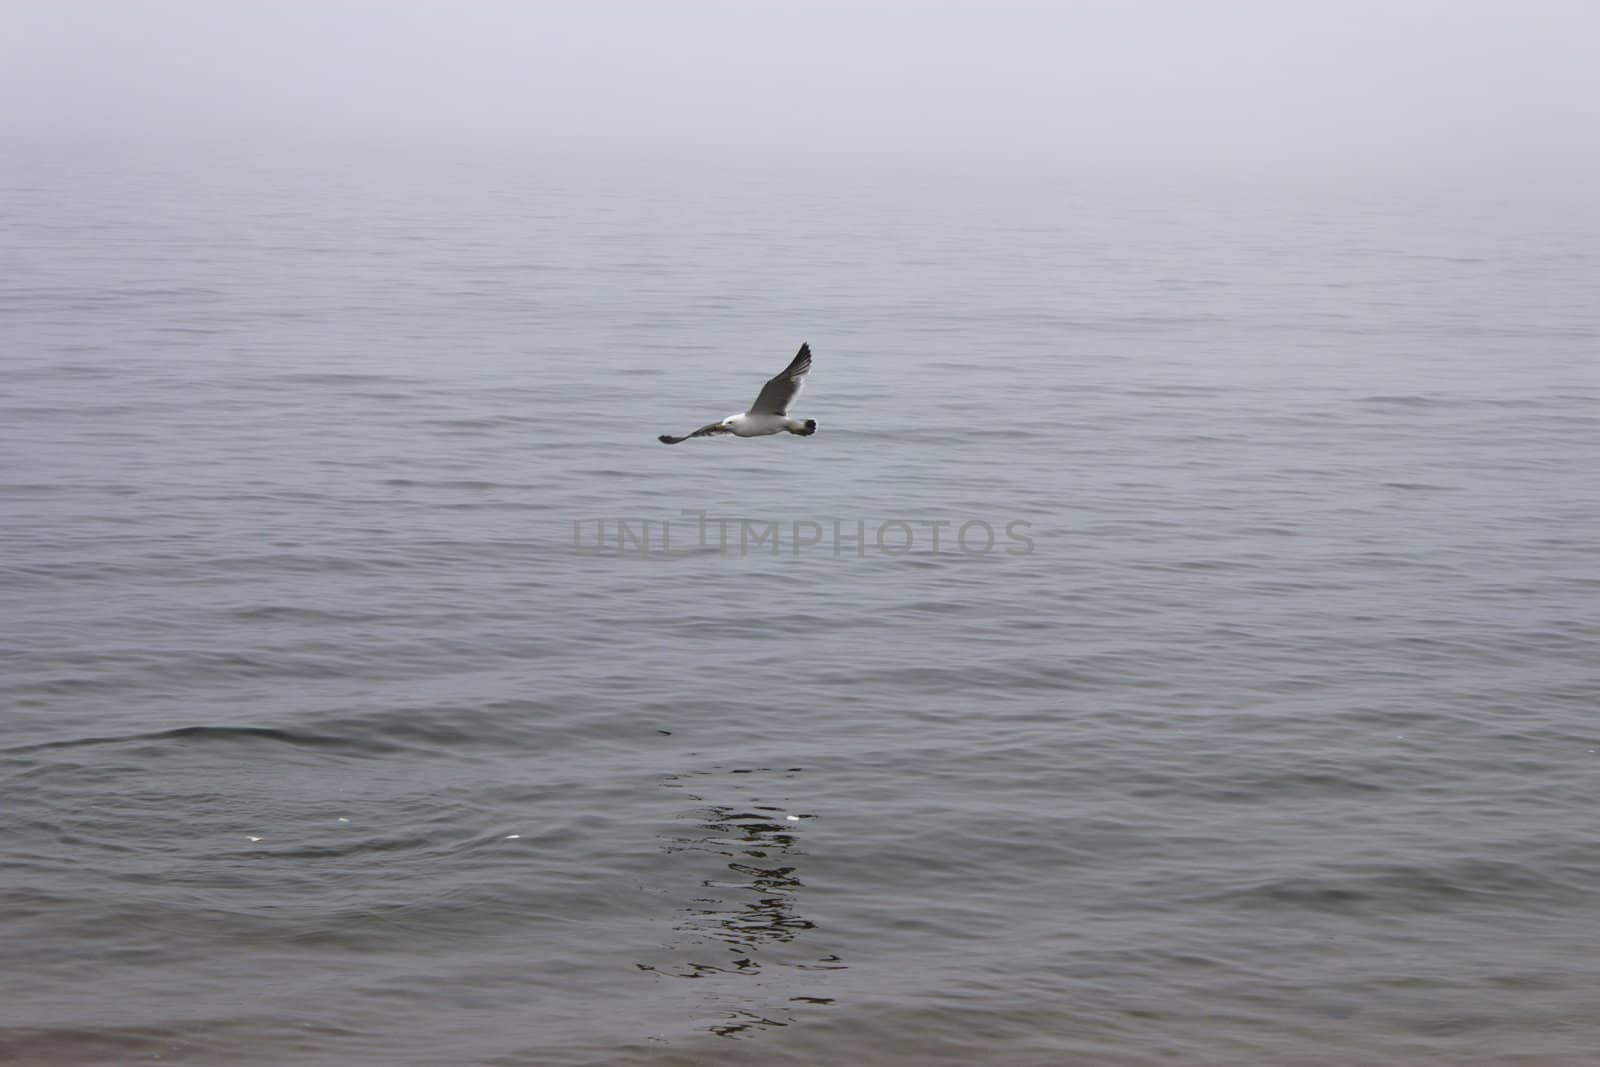 Seagulls in a fog by selezenj